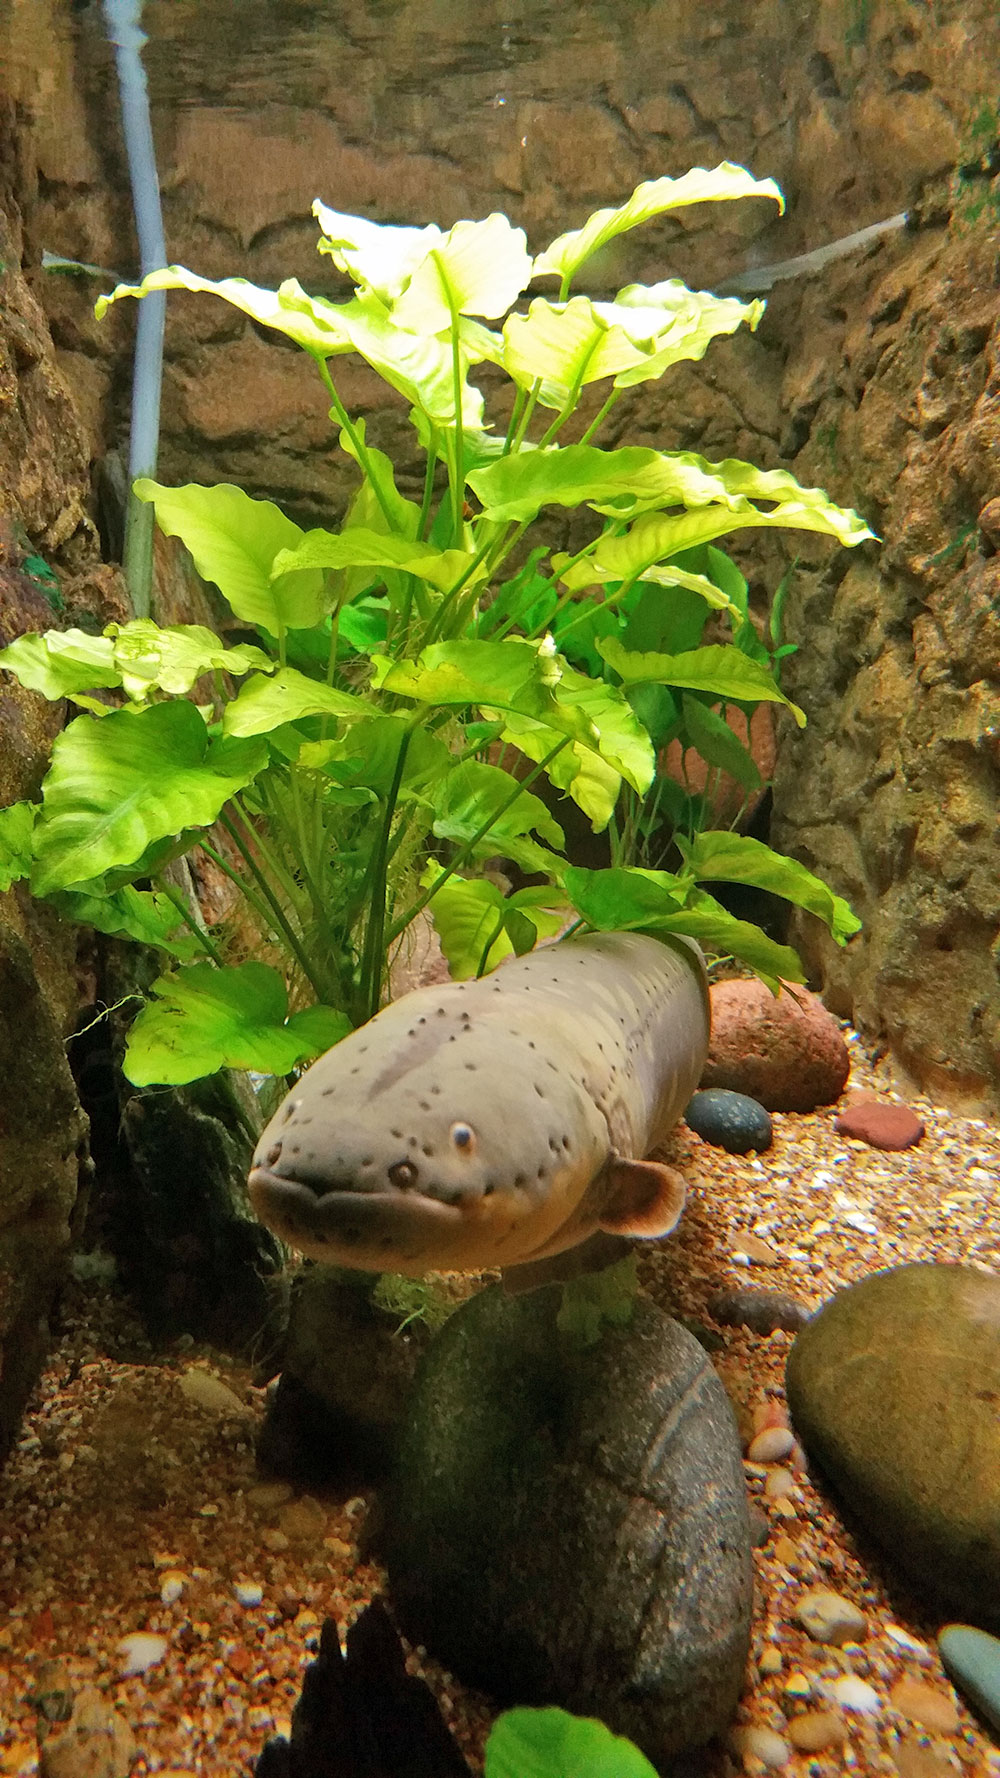 An ugly fish at the Dallas World Aquarium